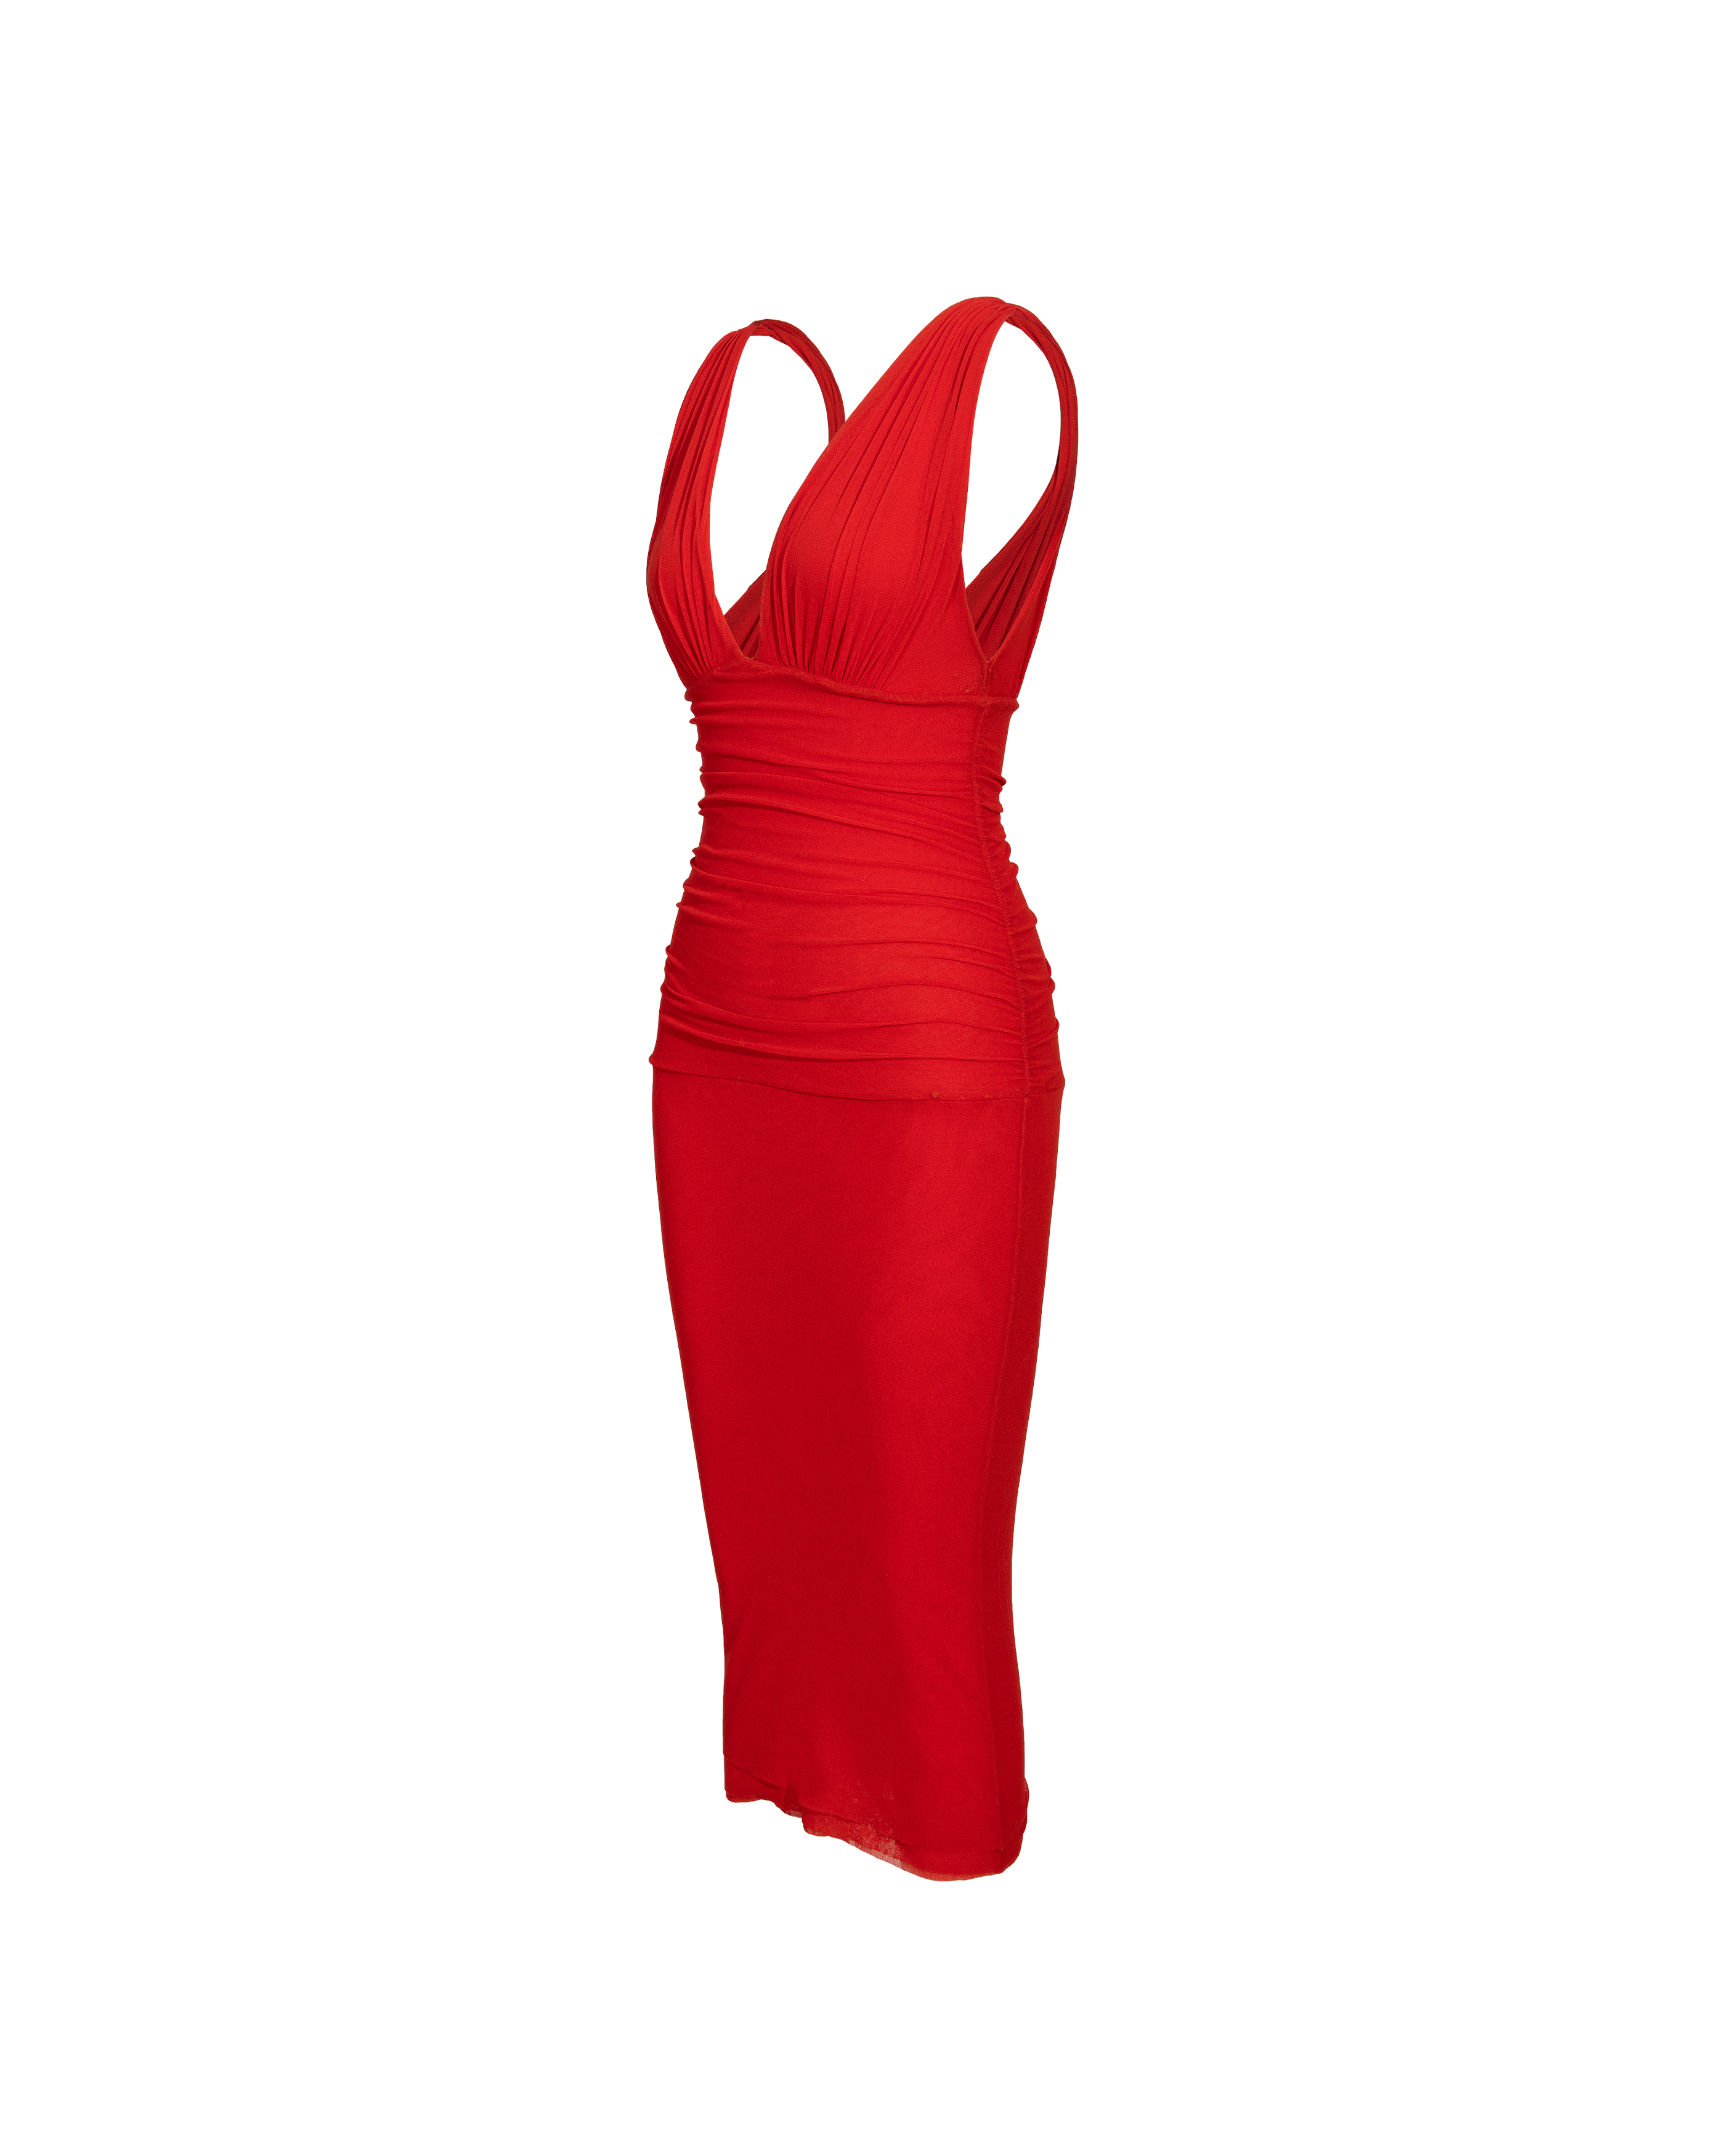 2000's 'Soleil' Red Below-Knee Sleeveless Dress